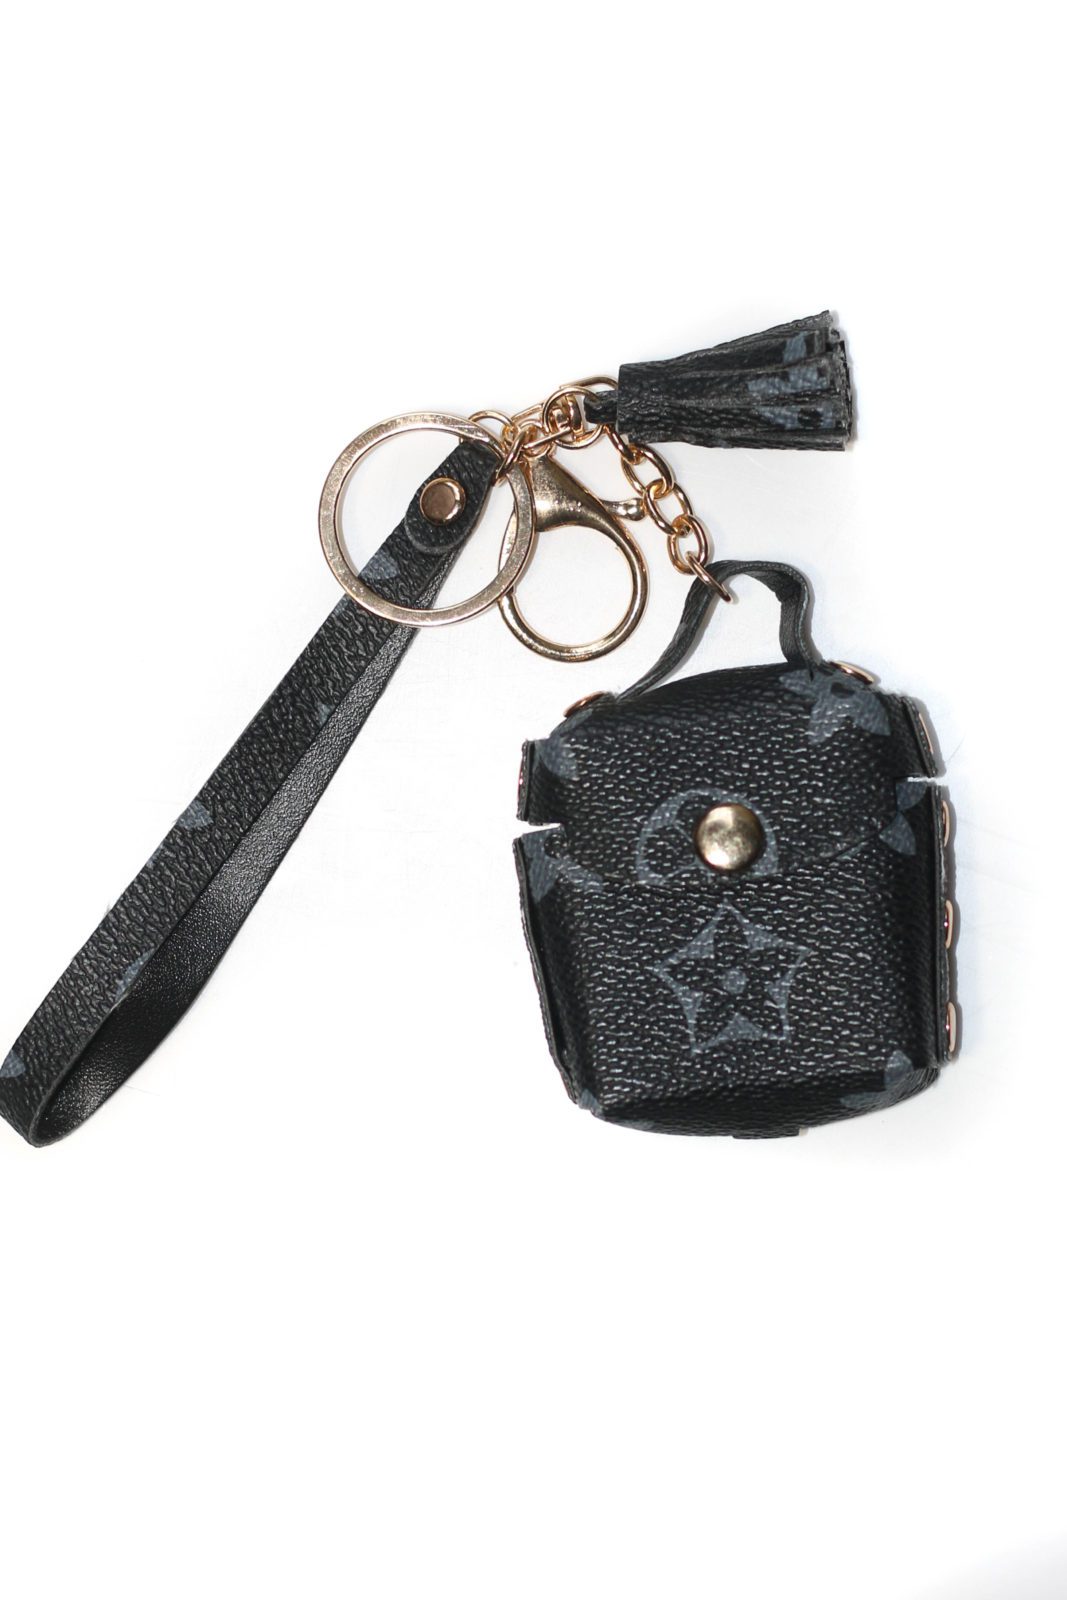 Pom pom Fashion Leather keychains - Creo Piece